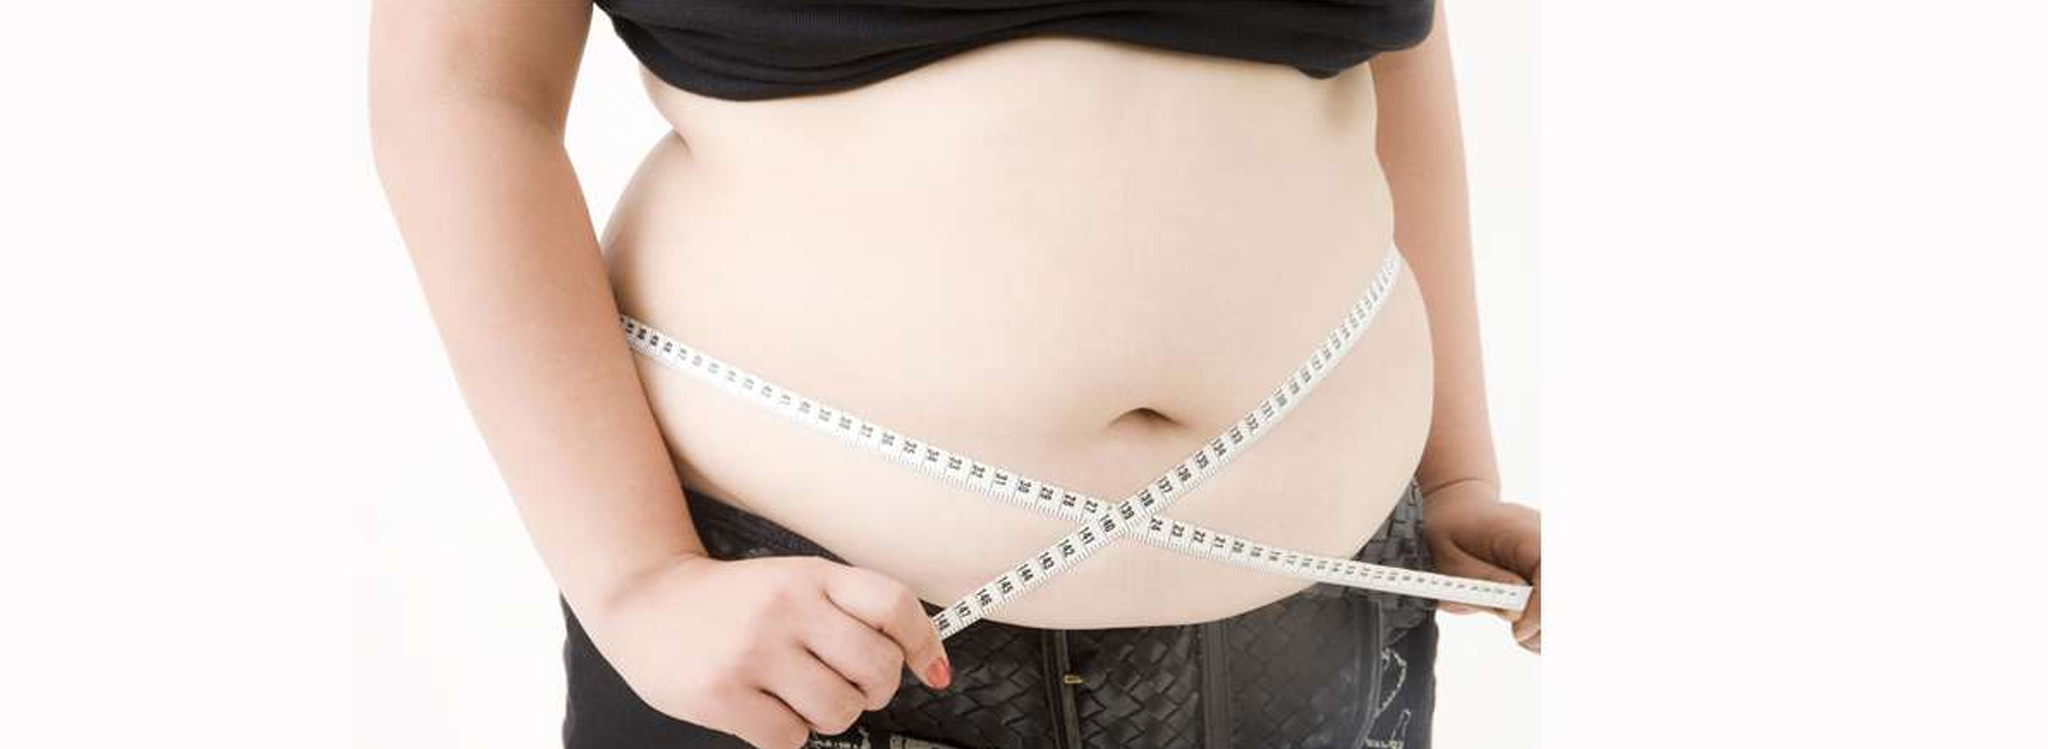 "giảm mỡ bụng" là từ khóa top đầu trên google. Gợi ý bài viết này sẽ giúp ích cho các bạn có nhu cầu giảm mỡ bụng. Hãy cùng tìm hiểu nhé!